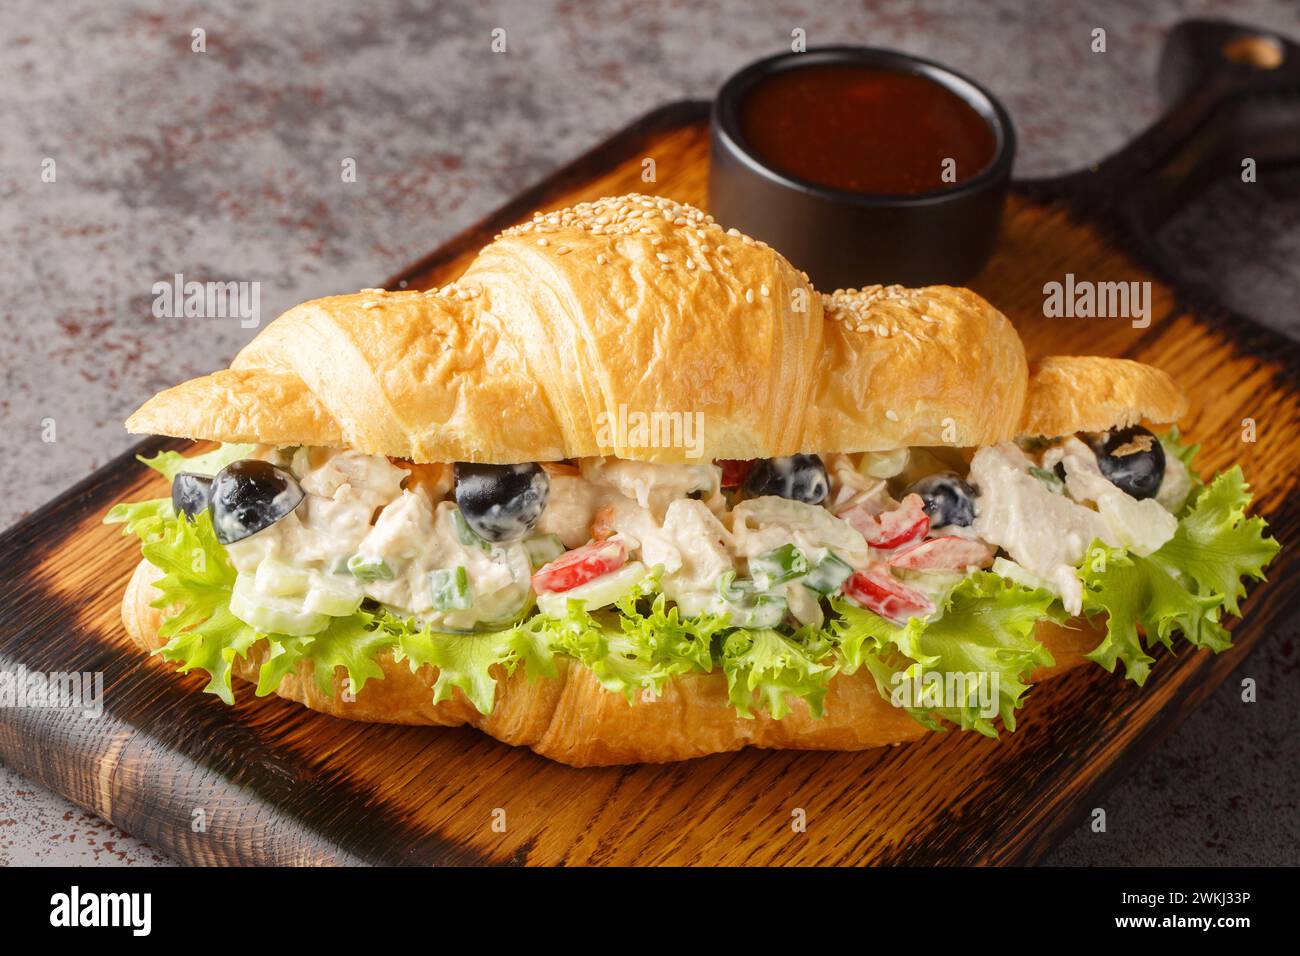 Salade de poulet sain maison Sandwich Croissant gros plan sur une planche de bois sur la table. Horizontal Banque D'Images